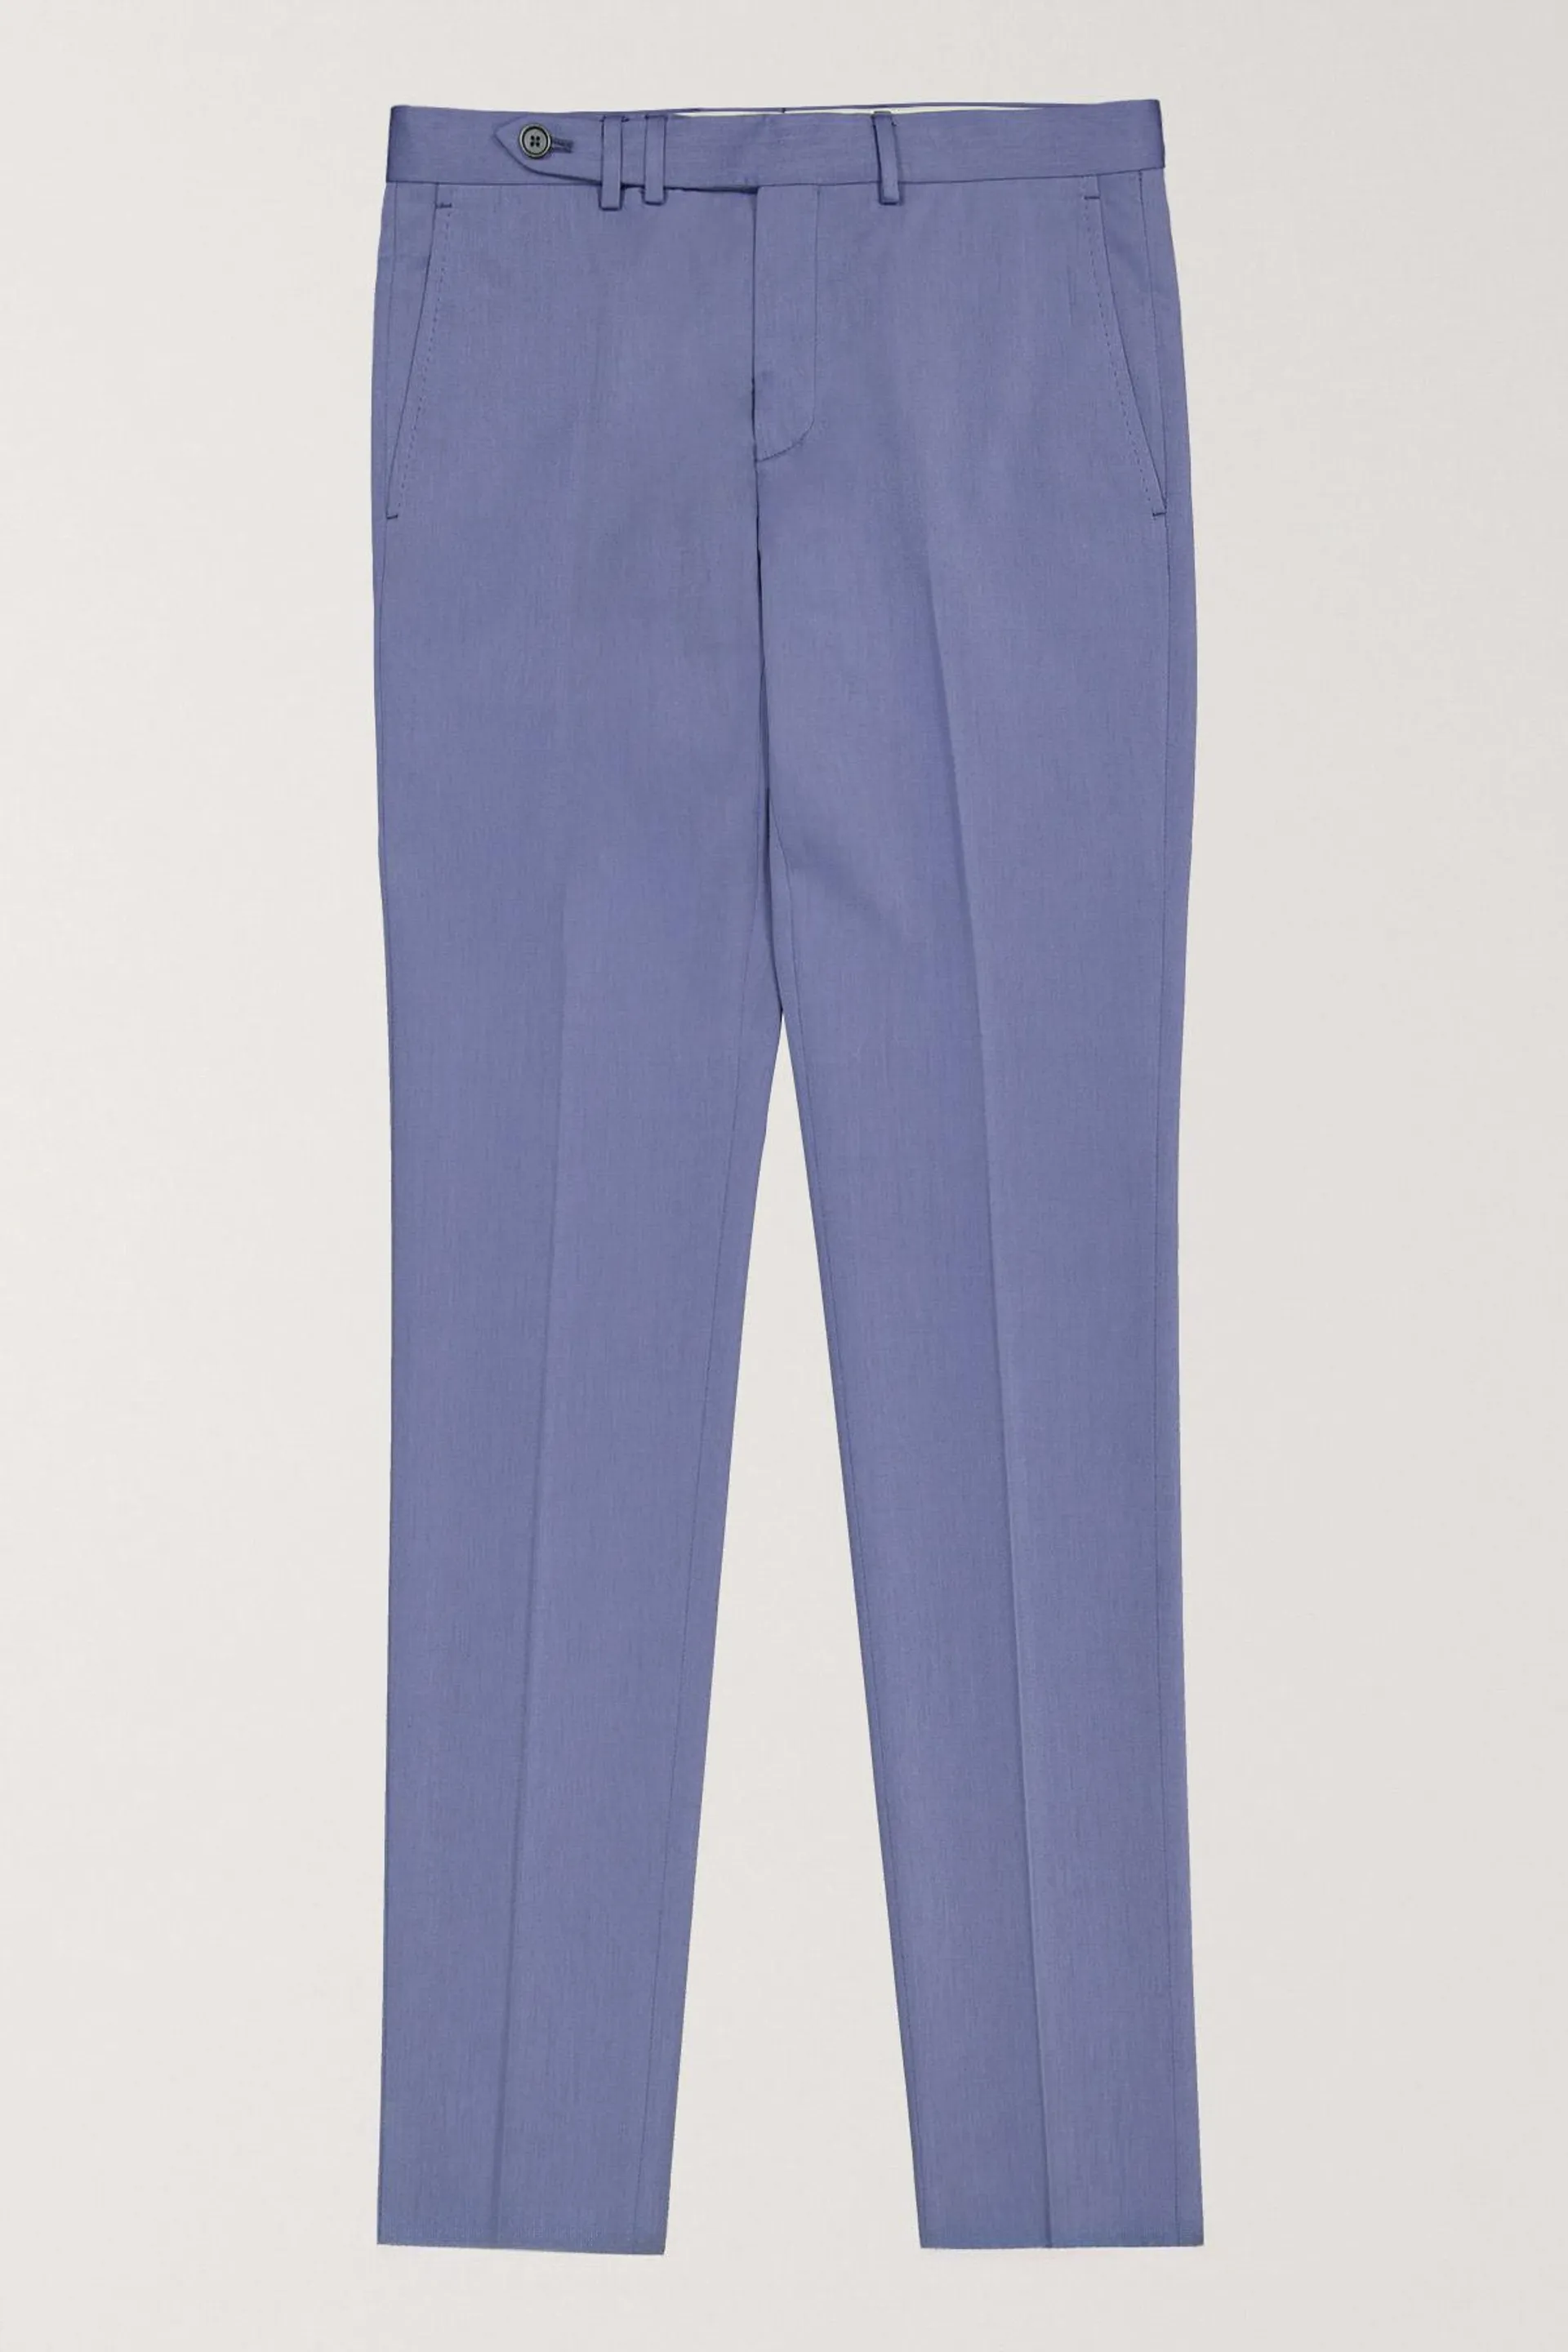 Pantalón Formal Calderoni Azul Slim Fit